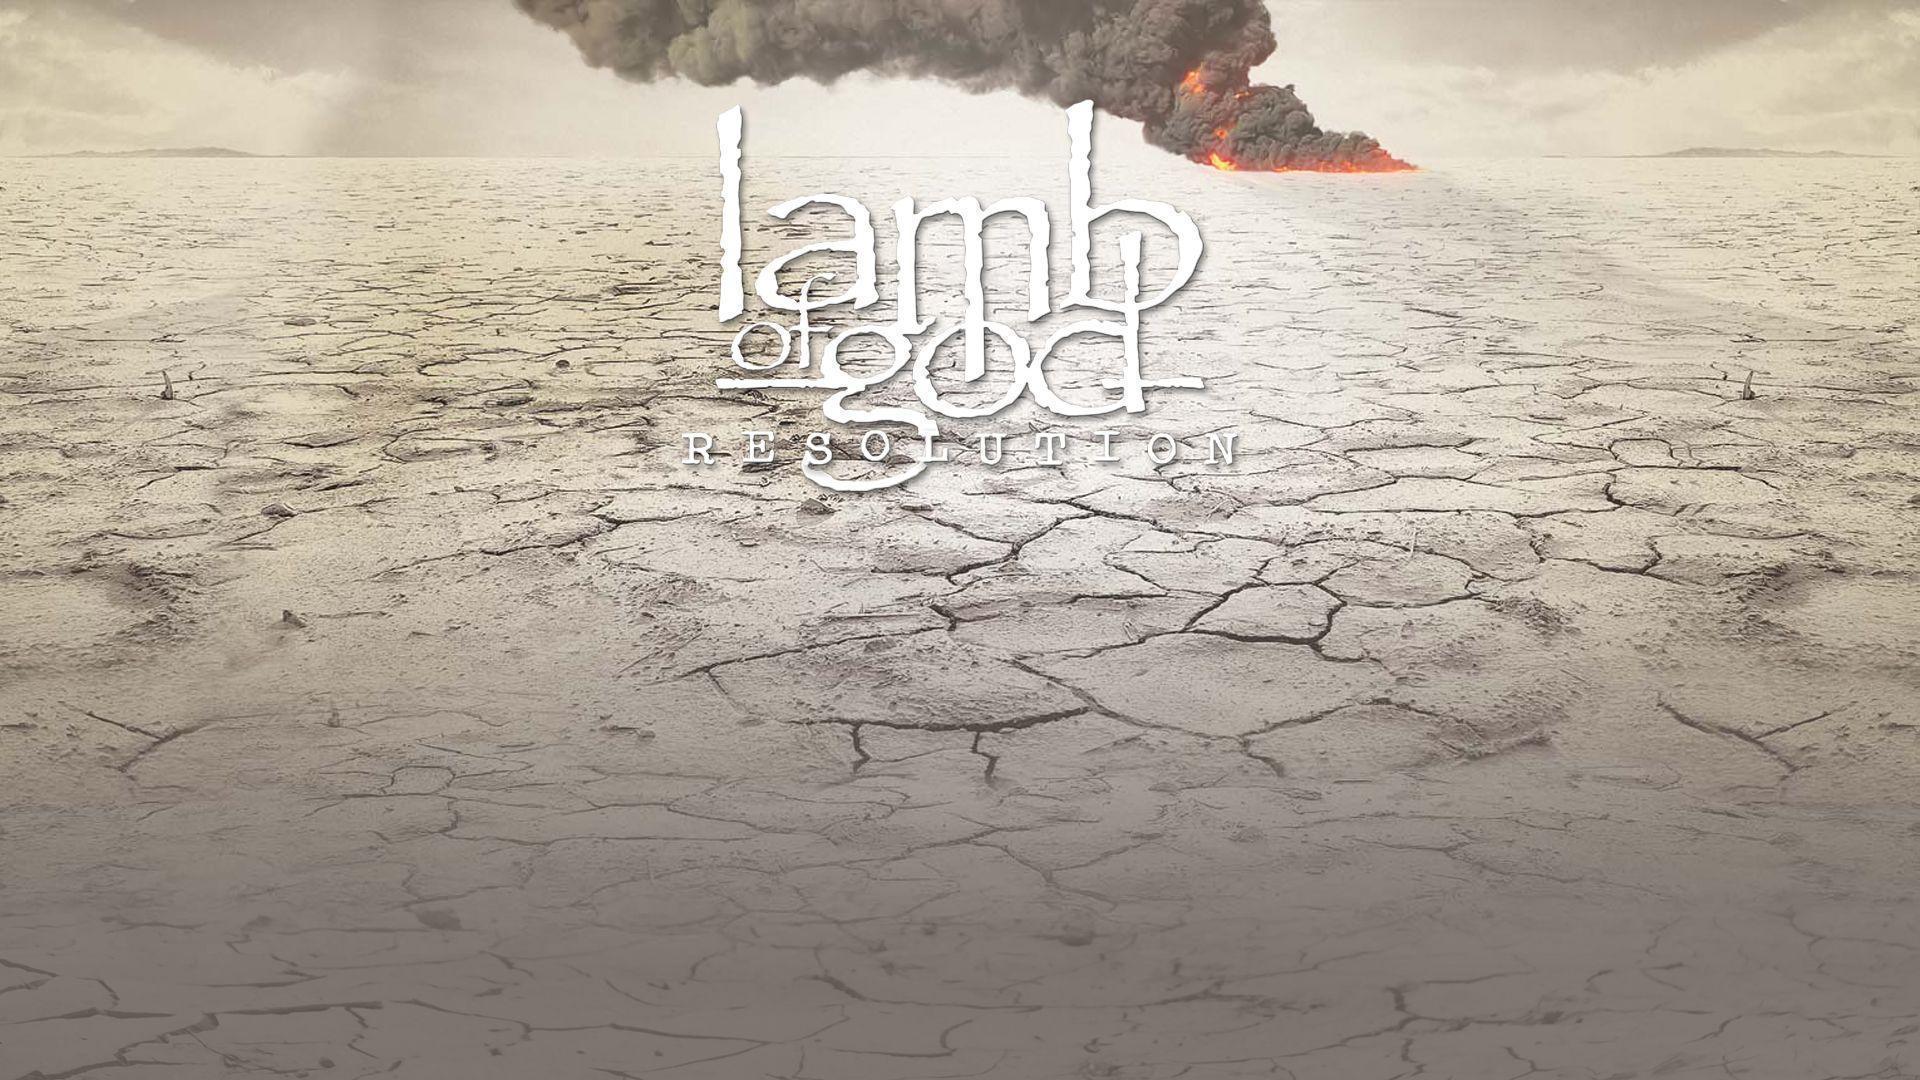 Lamb of God Wallpaper 1920x1080 px Free Download ID